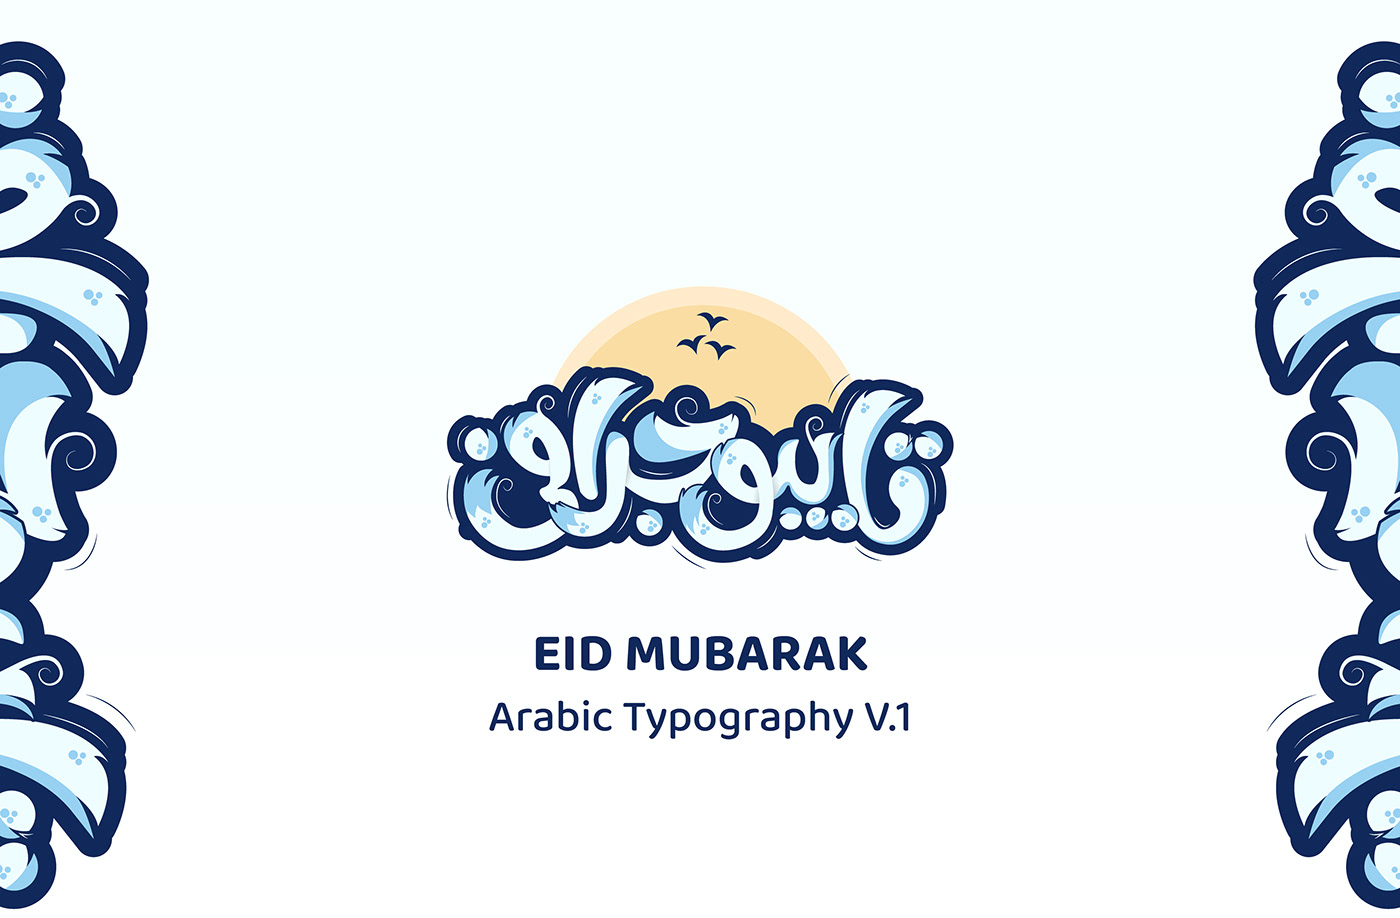 arabic calligraphy arabic typography eid mubarak Eid-al-Fitr hand drwing typo Islamic Calligraphy Islamic Typography Typoface typography sticker